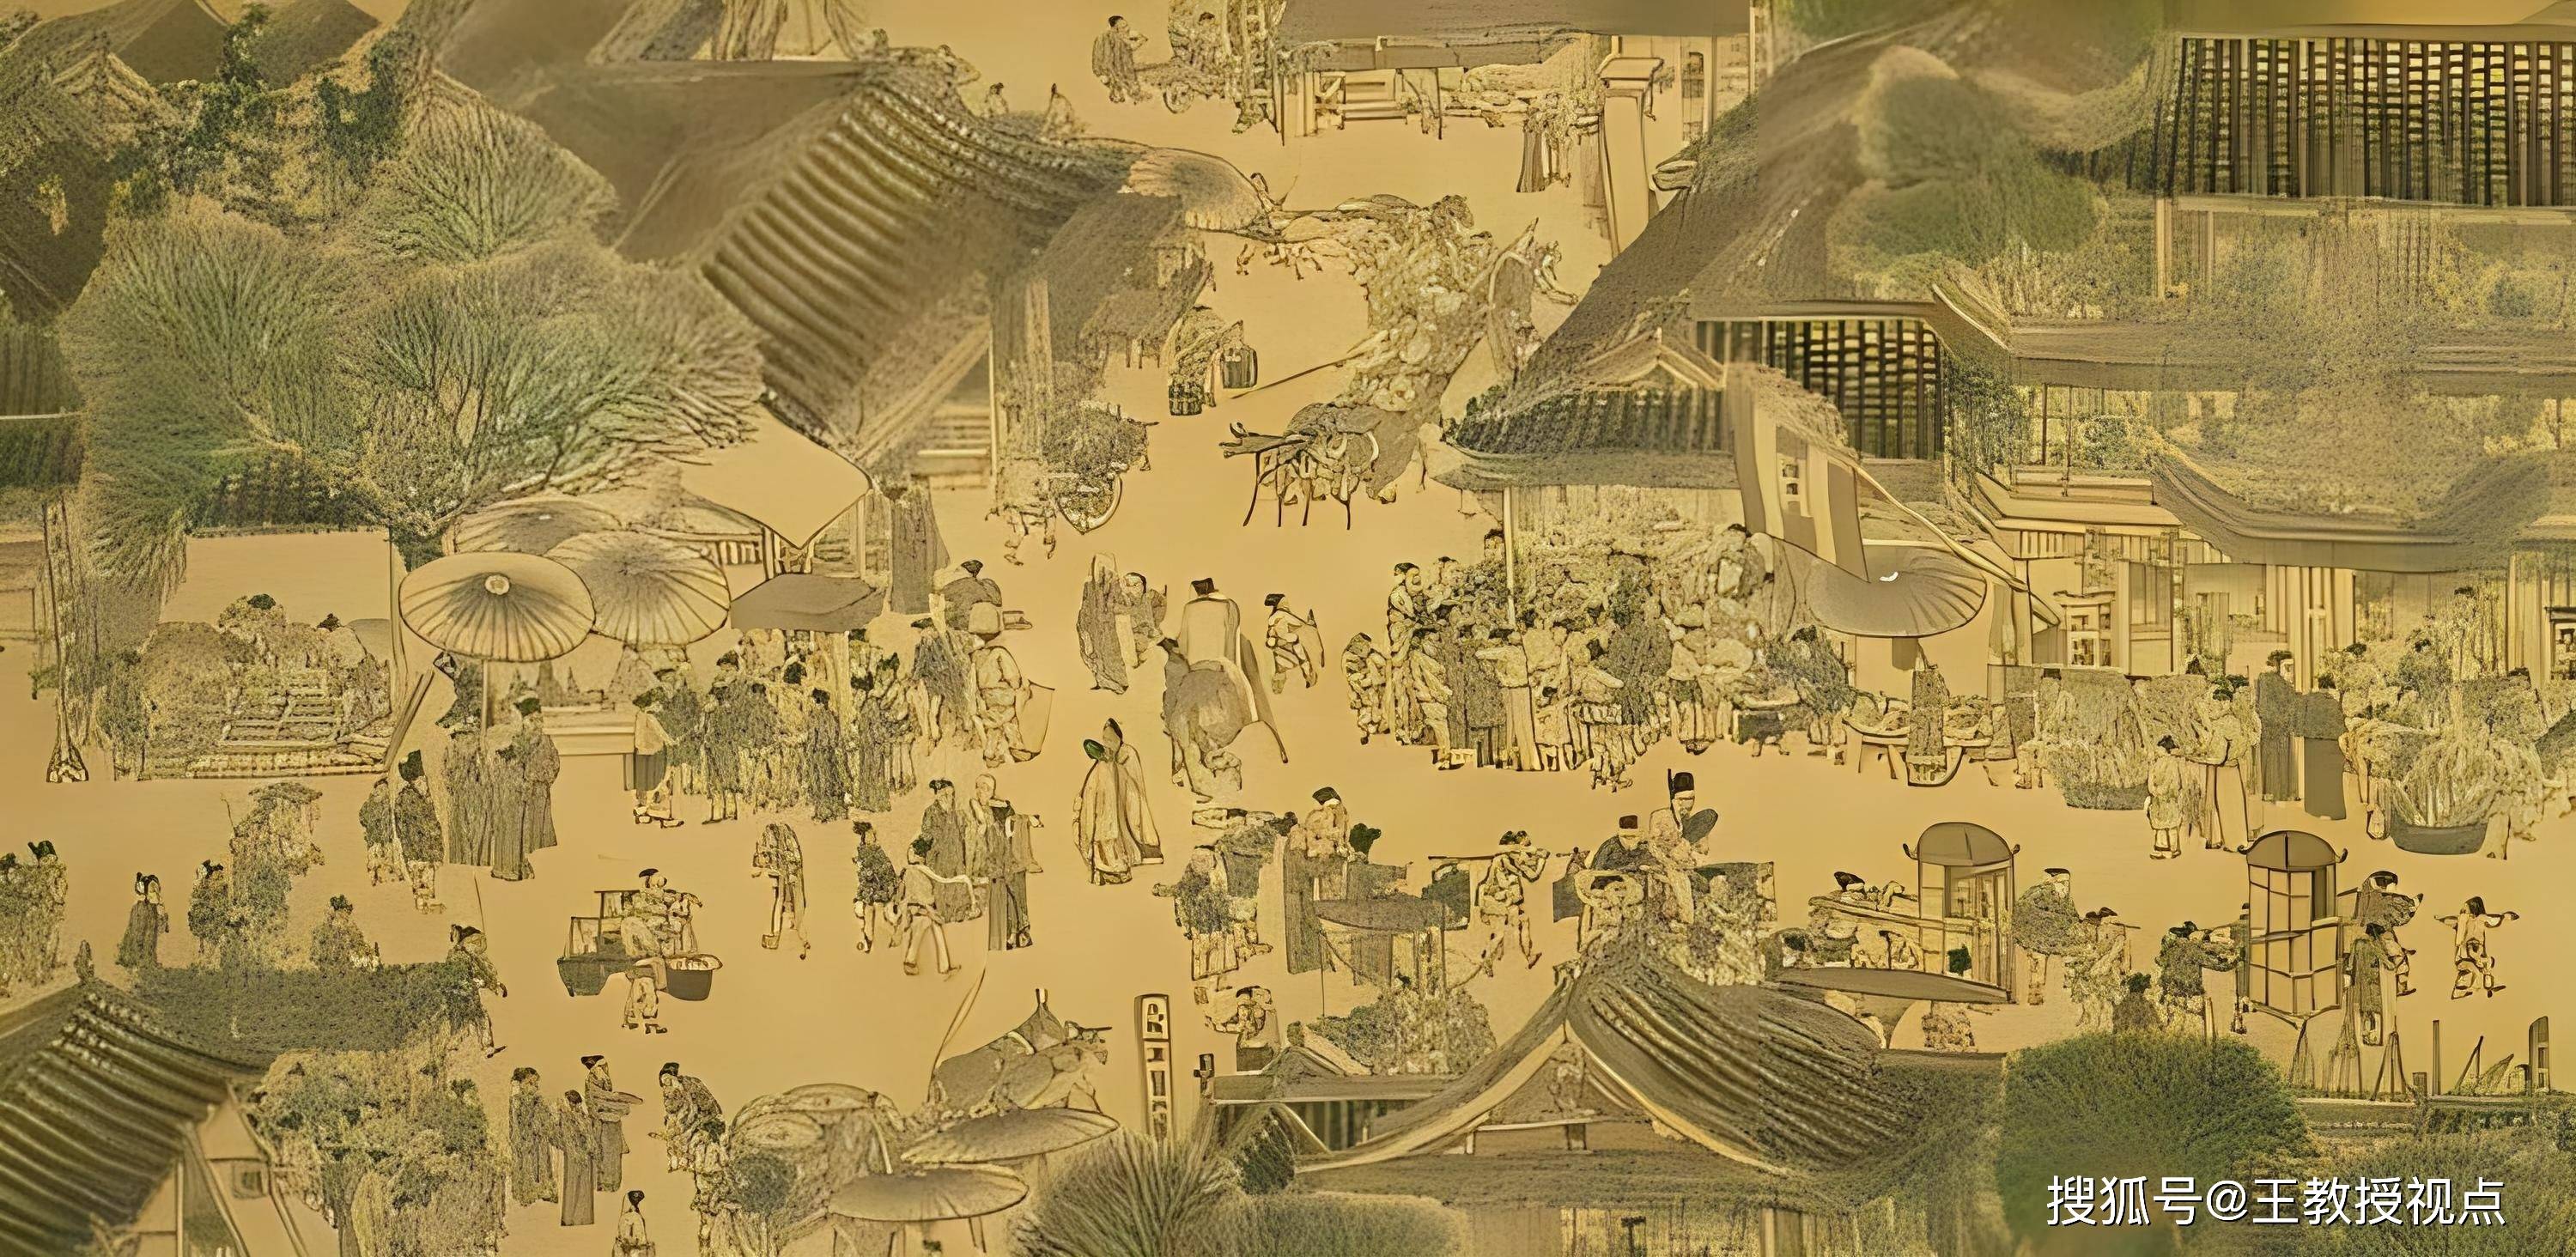 探秘清明上河图:古代民俗建筑与文化的绚丽画卷